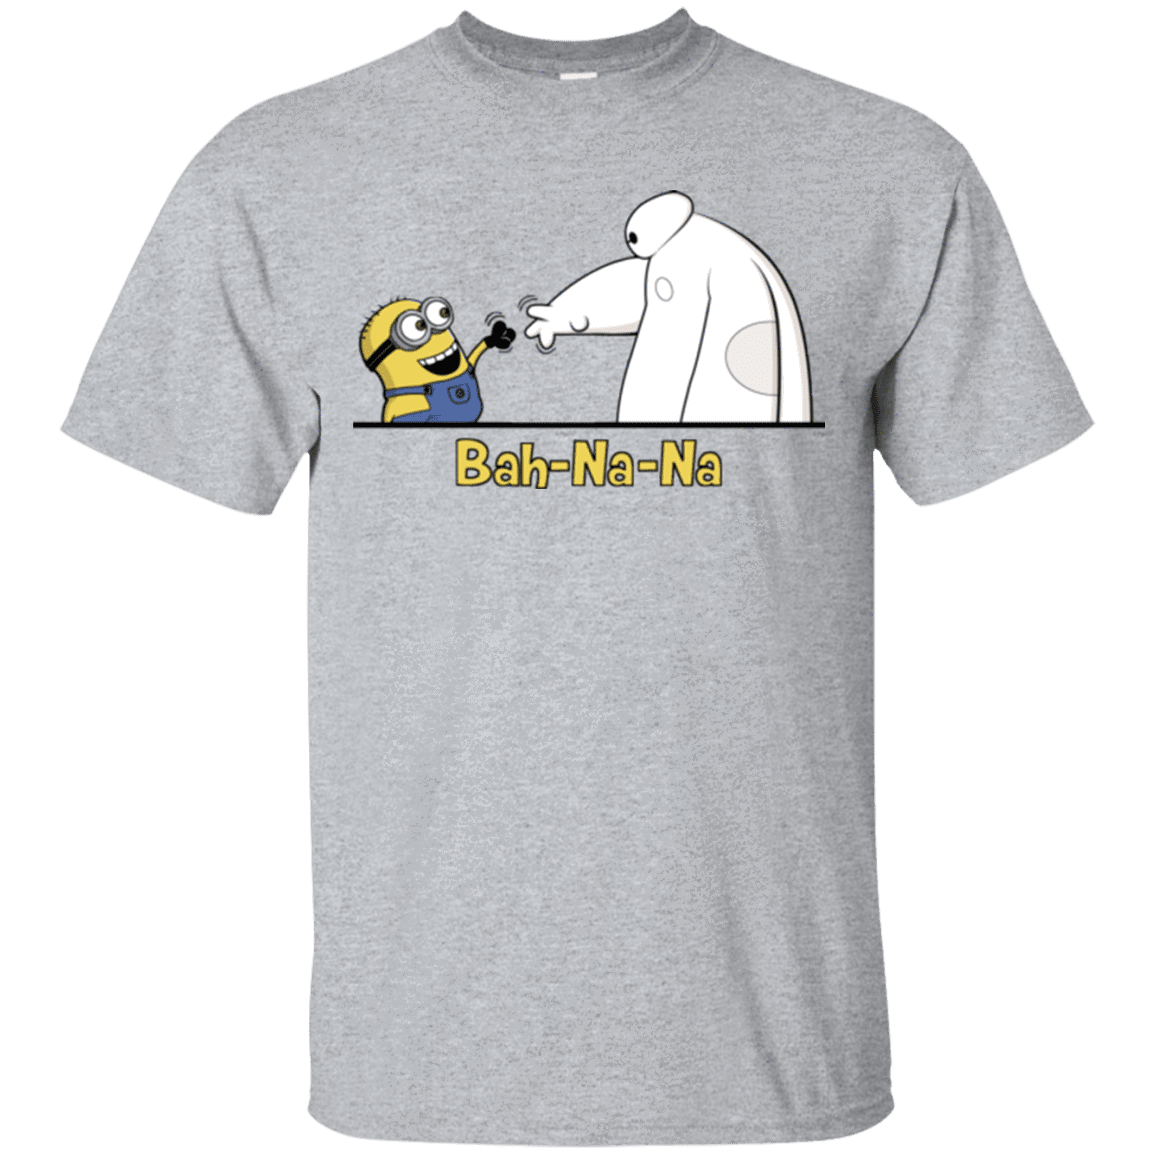 T-Shirts Sport Grey / S Bah-Na-Na T-Shirt